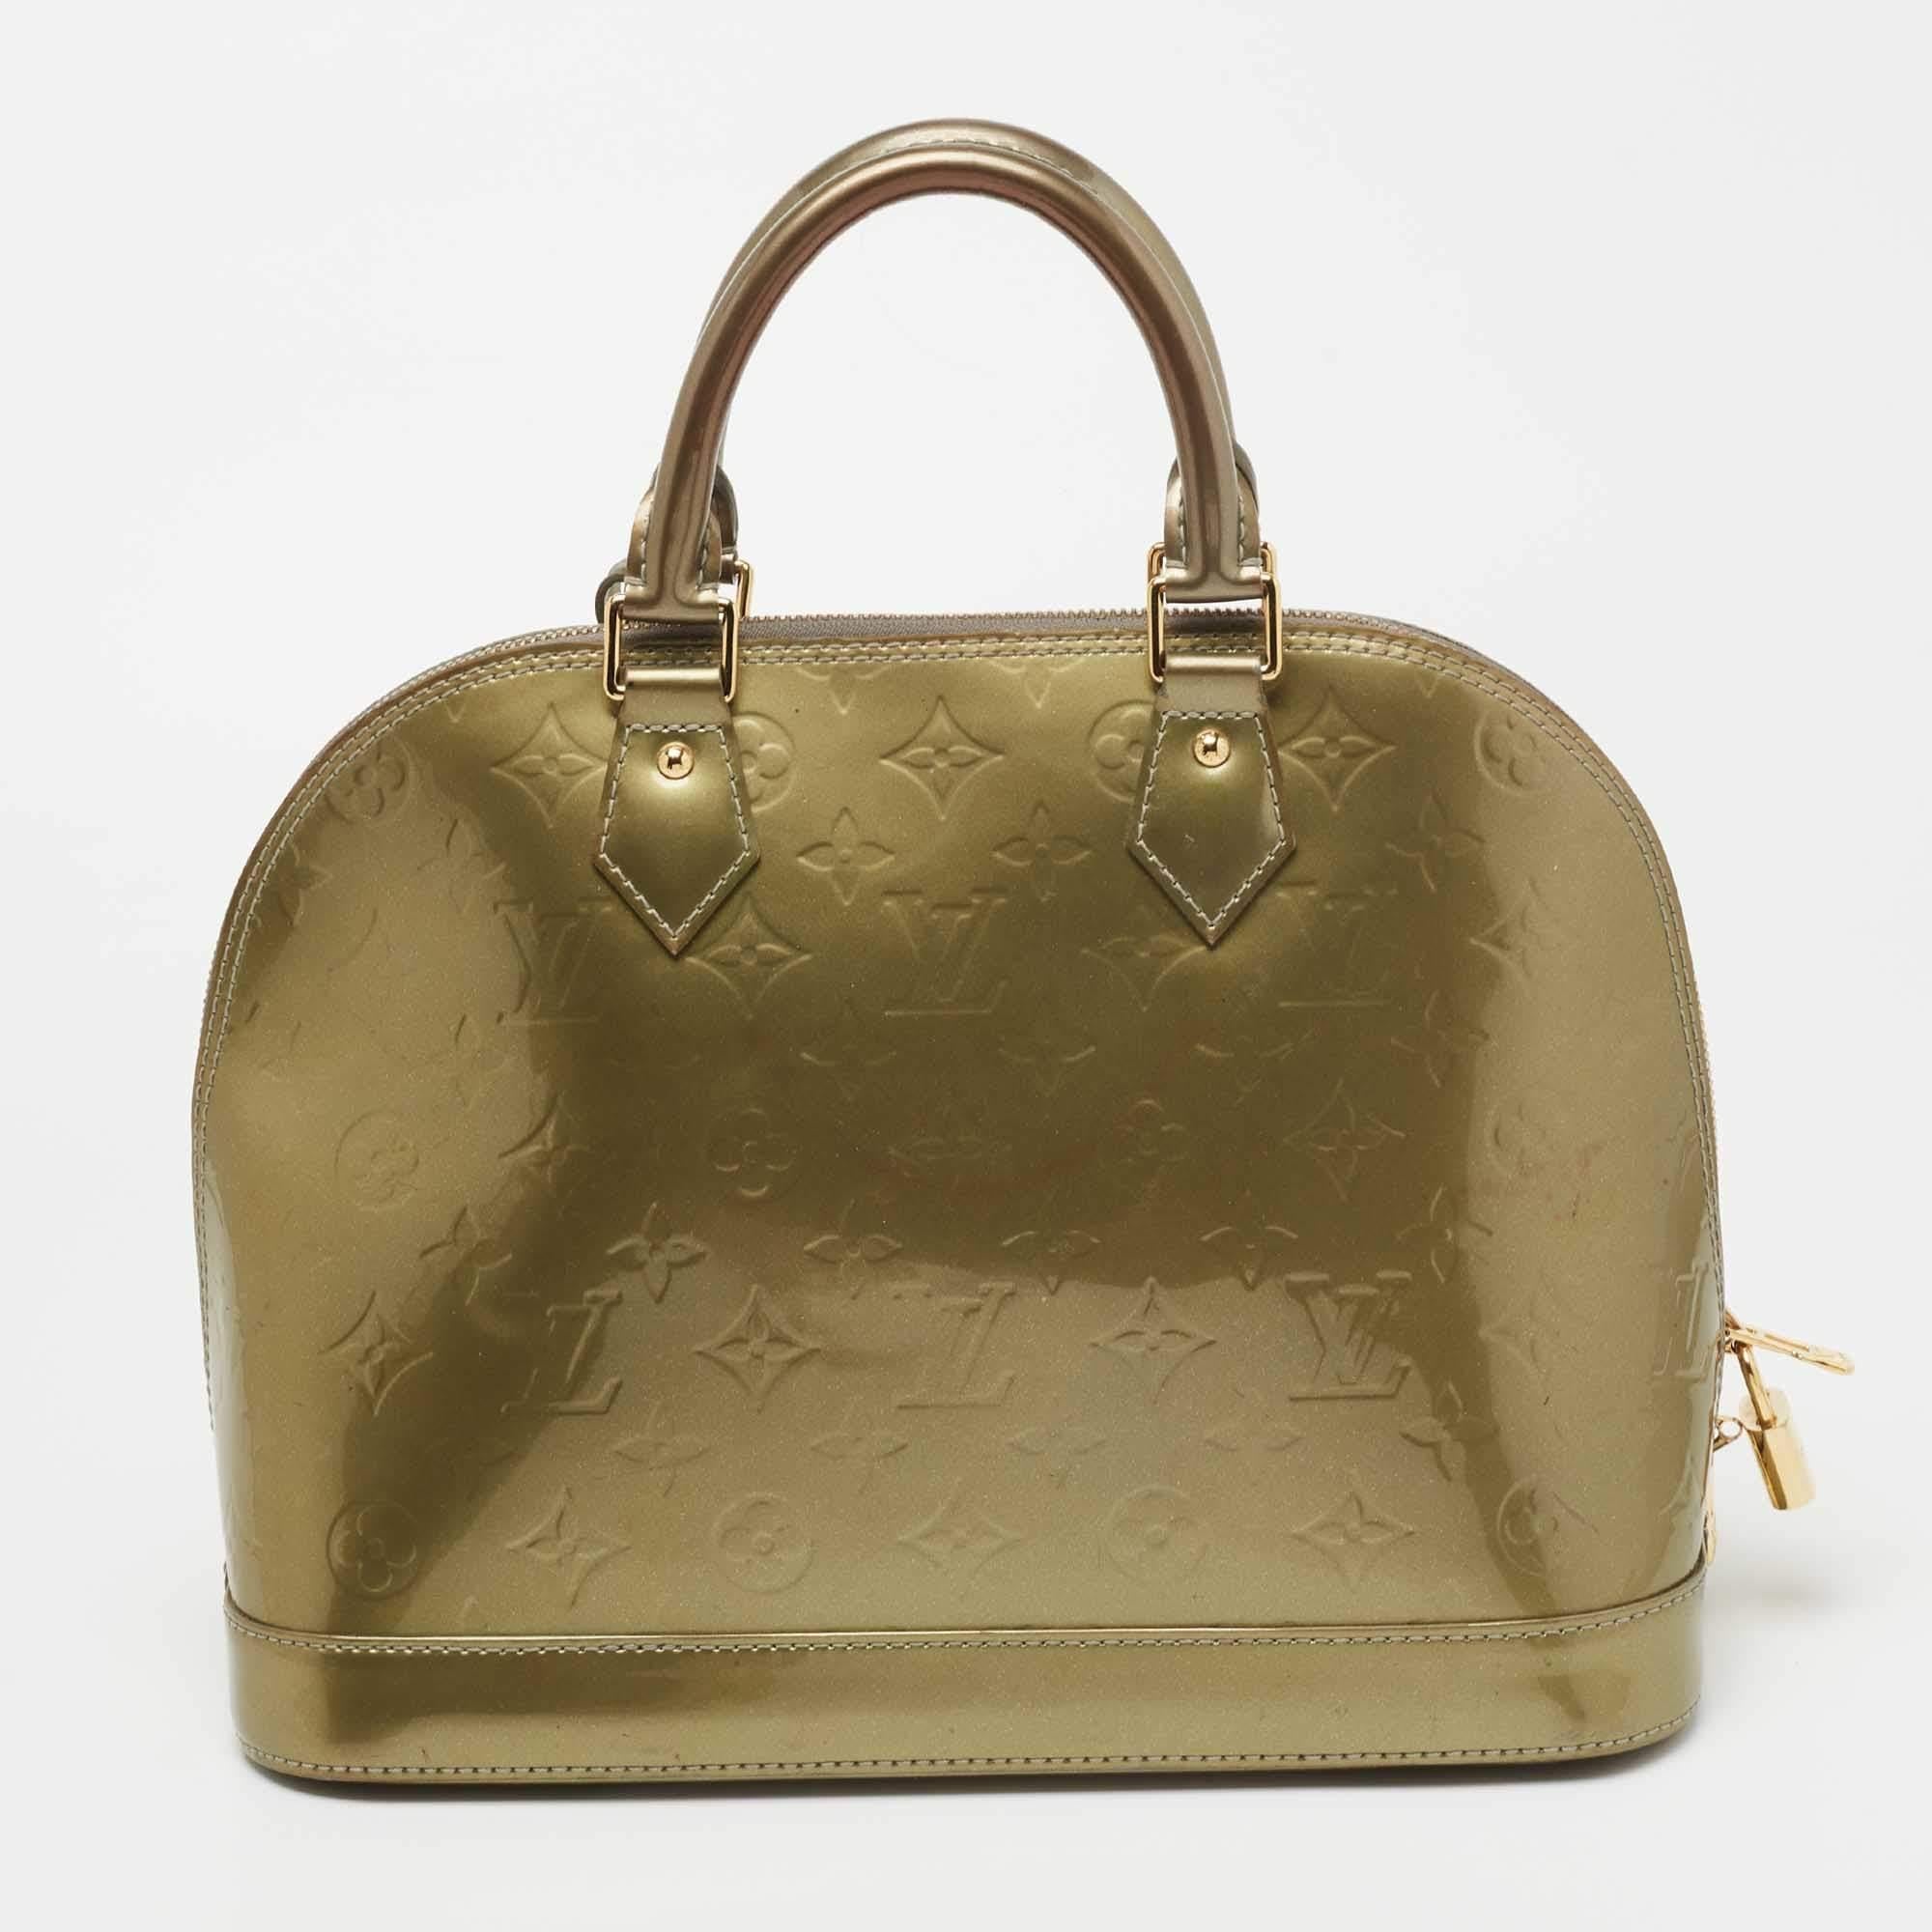 Louis Vuitton-Handtaschen sind bekannt für ihre einzigartigen Designs, die das elegante Flair des Labels ausstrahlen, und die makellose Handwerkskunst des Labels sorgt dafür, dass die Kreationen Saison für Saison halten. Hier ist eine atemberaubende